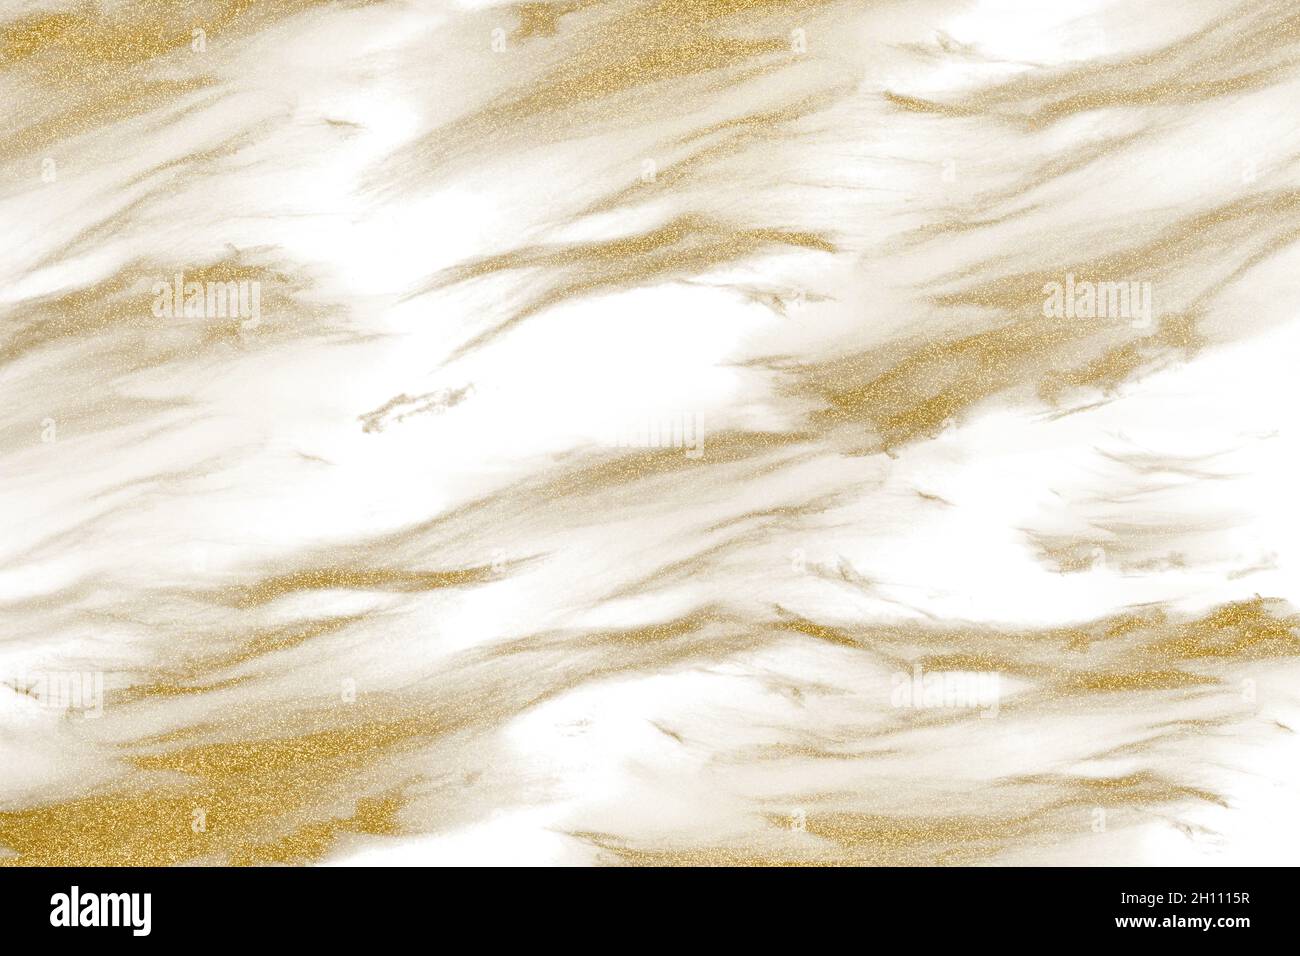 Trama di sabbia ondulata di colore dorato, vista in full frame su sfondo bianco. Sfondo festivo con glitter d'oro. Foto Stock